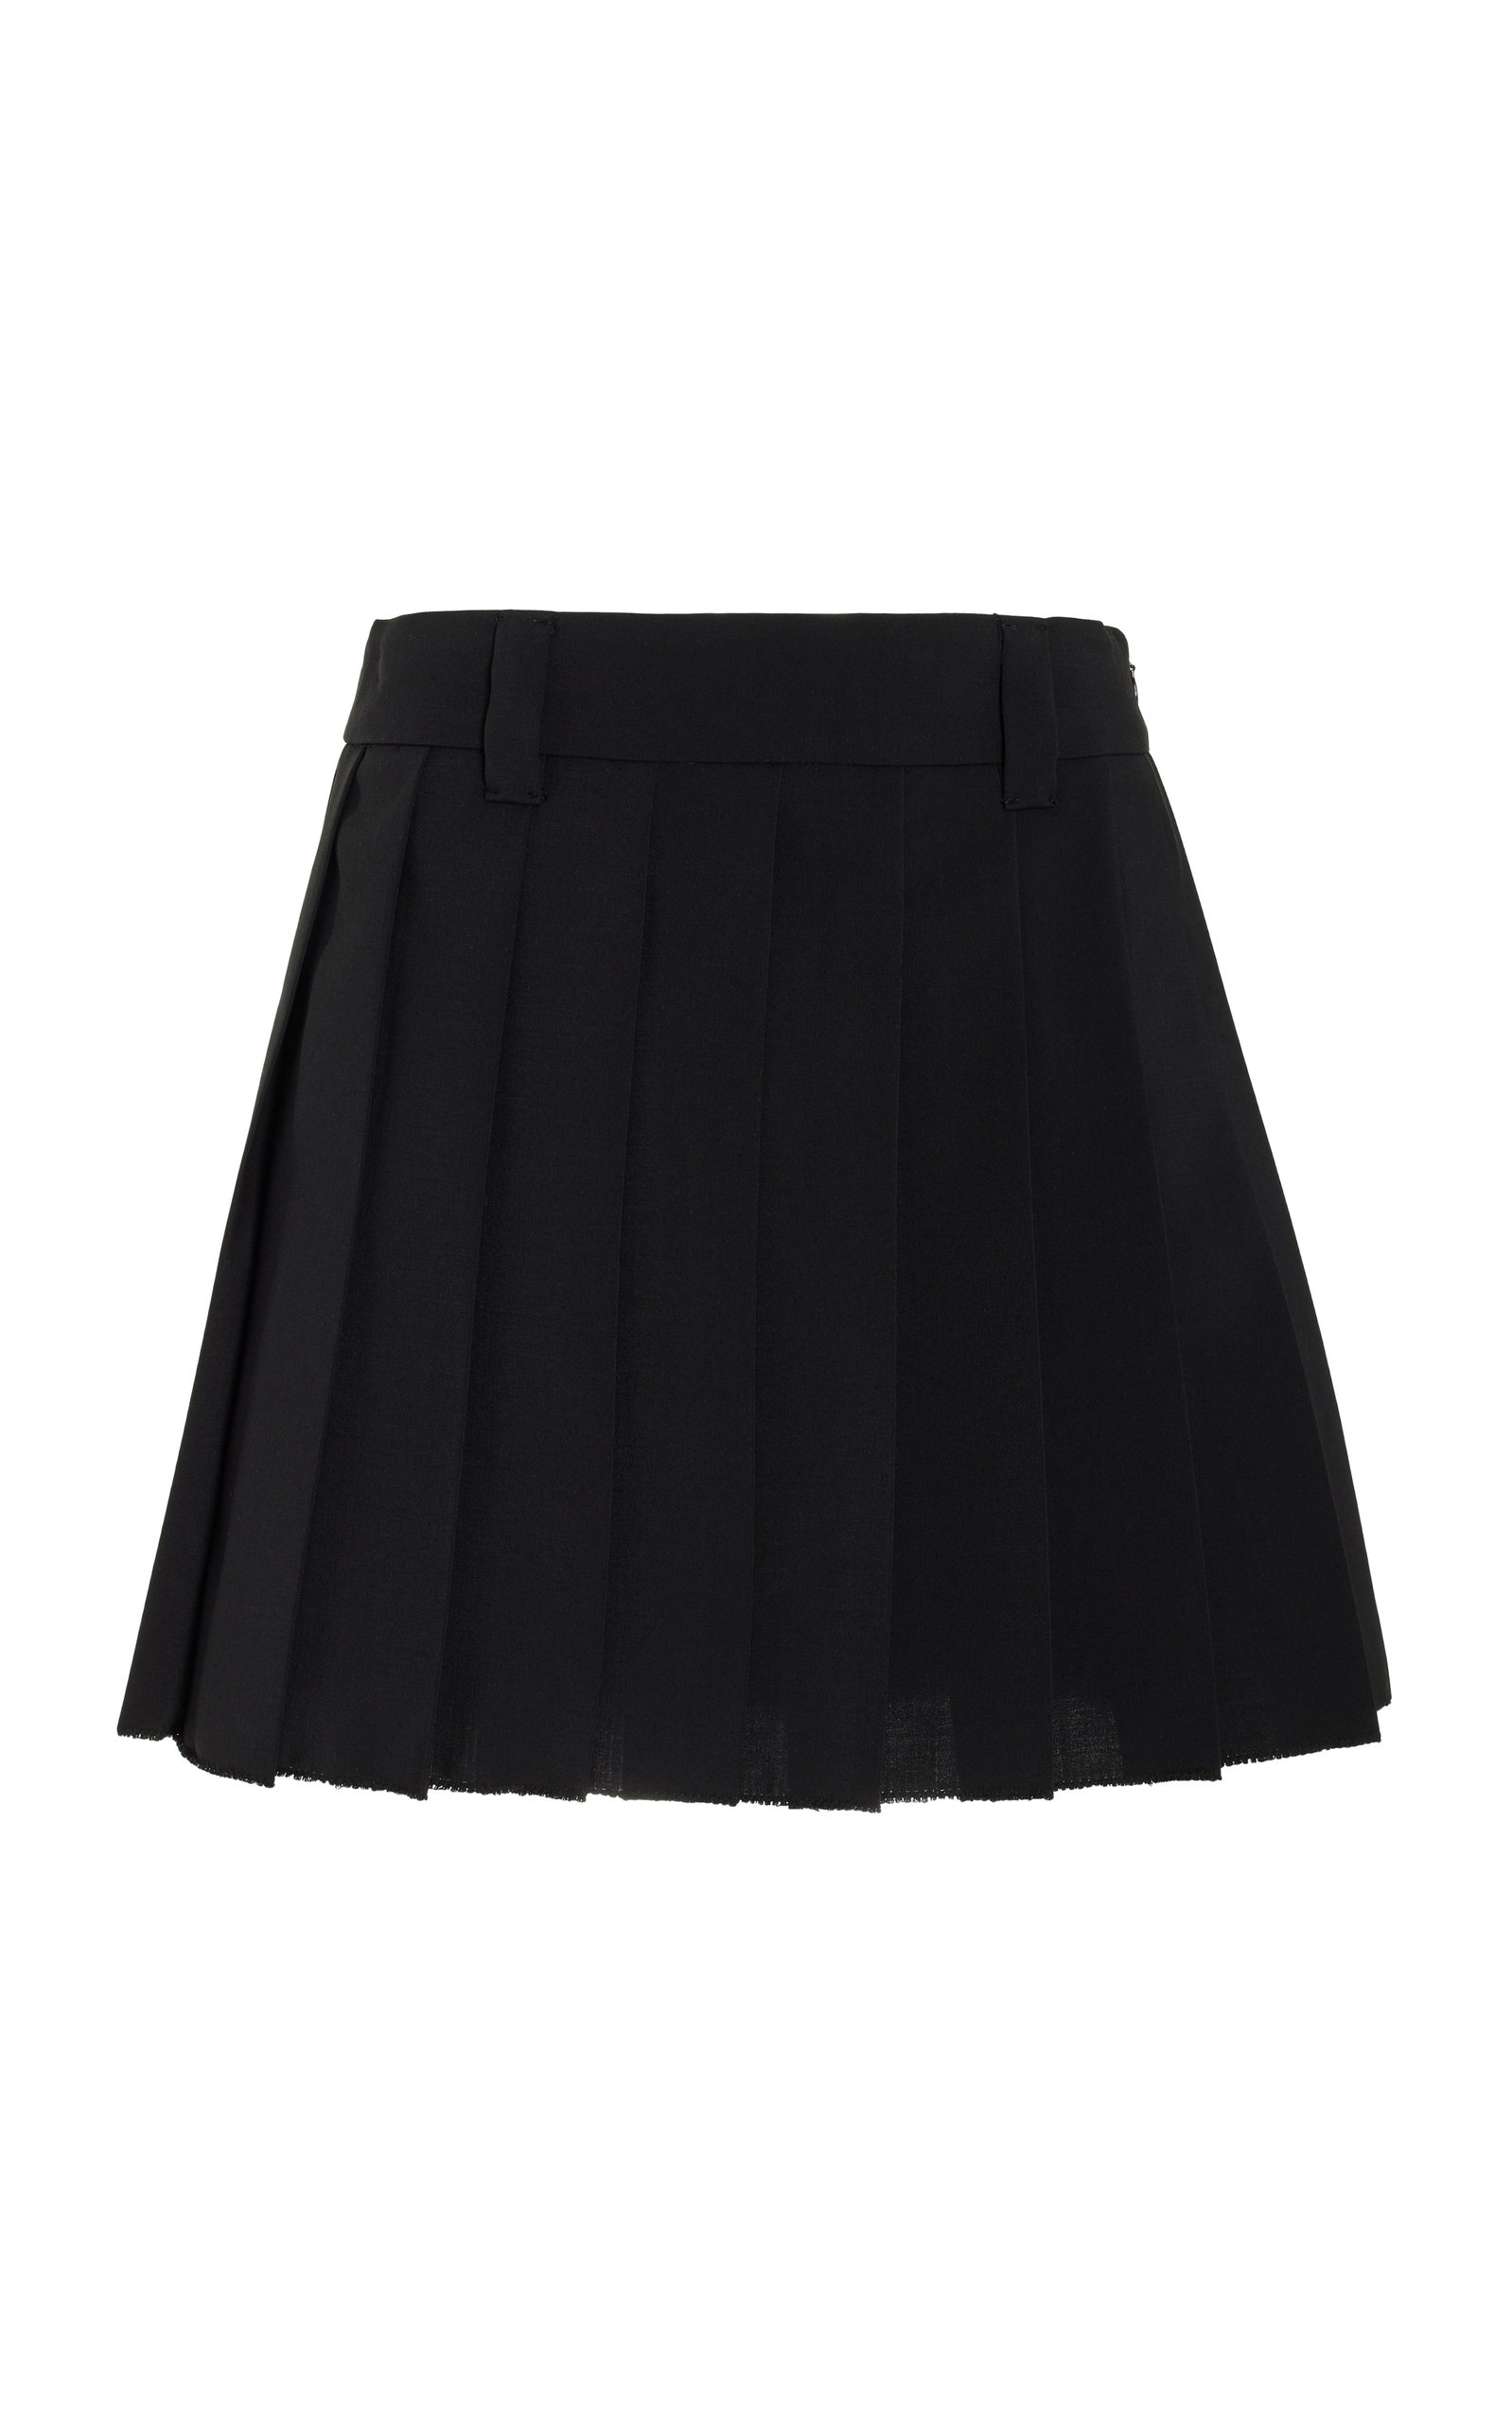 Miu Miu - Women's Pleated Raw-Edge Mohair Mini Skirt - Black - IT 38 - Moda Operandi